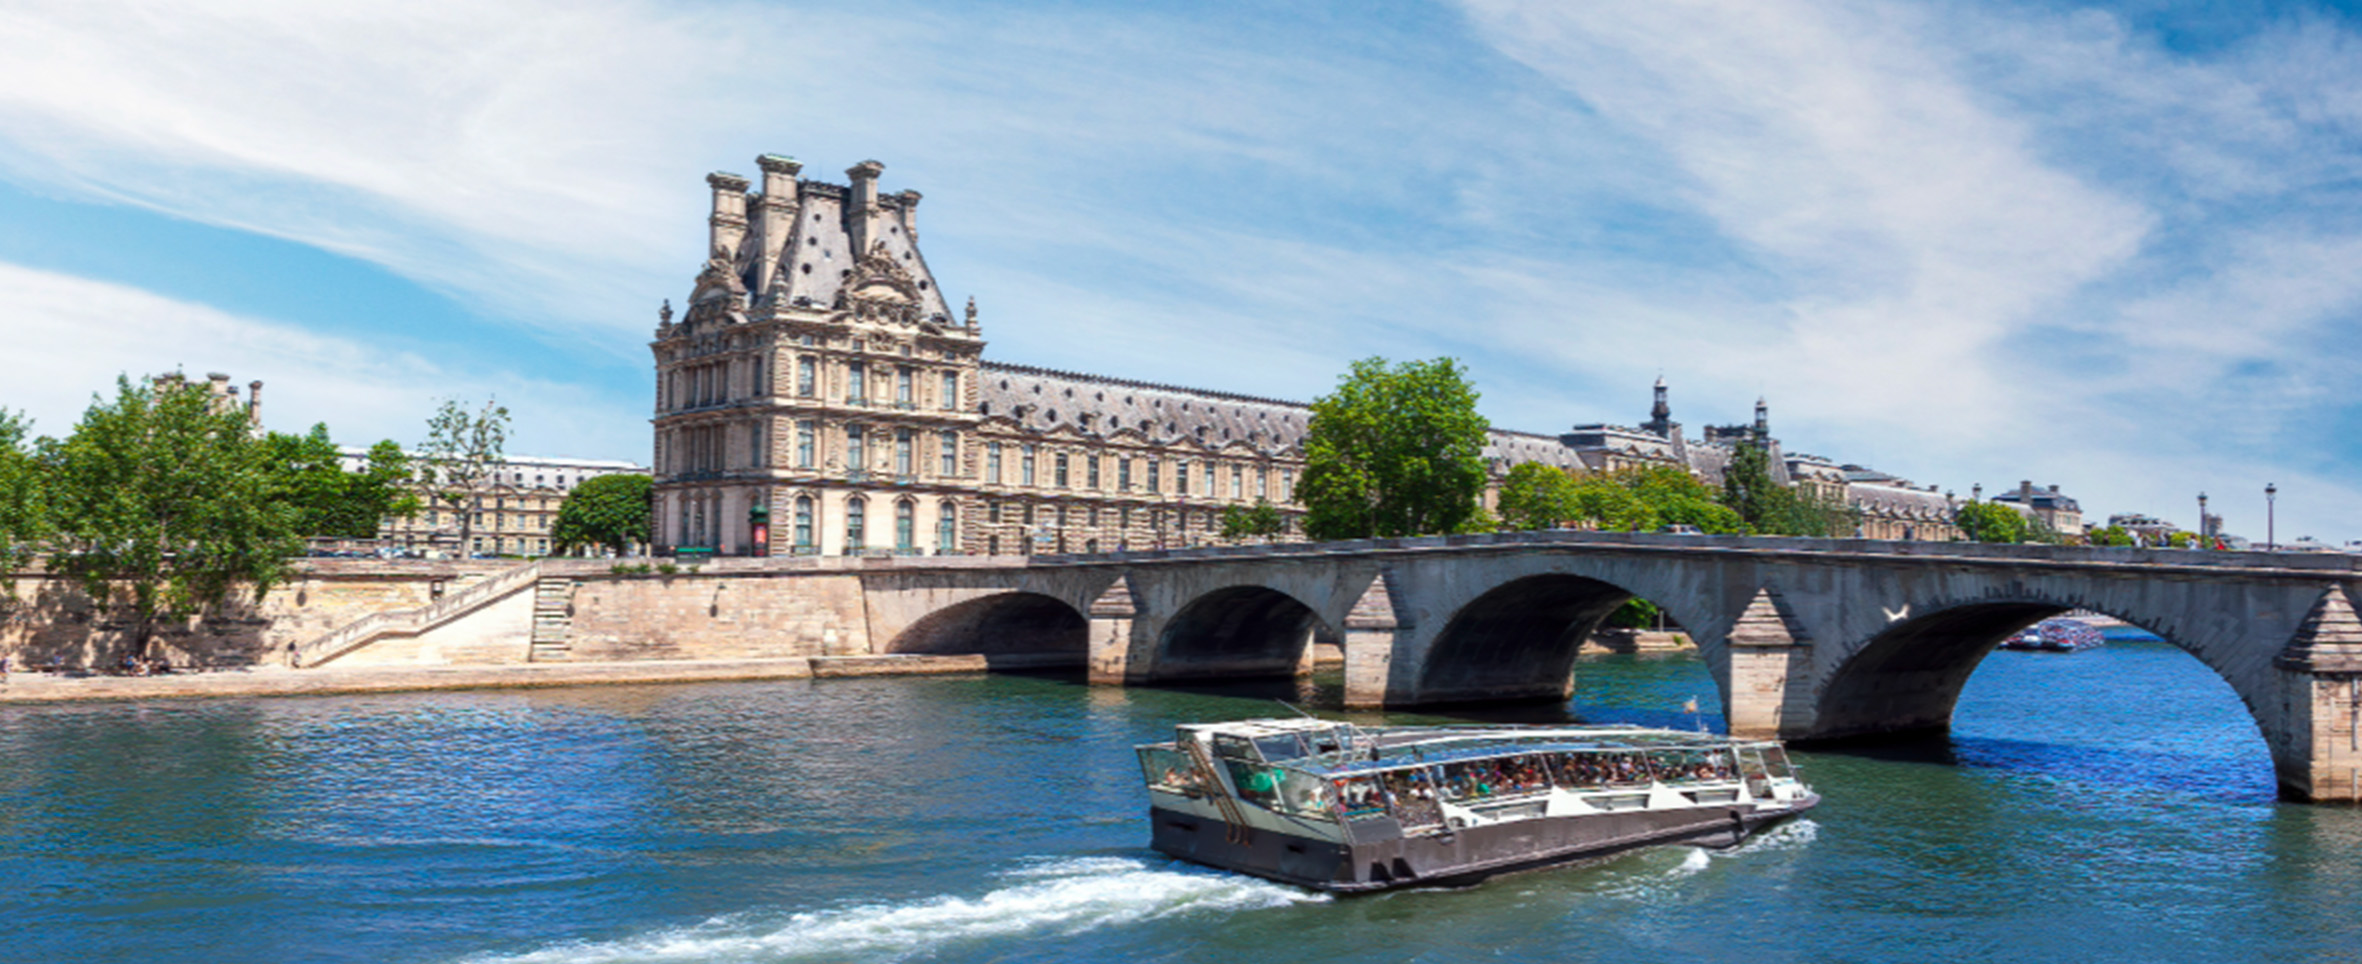 El río Sena desde un puente de París un día de diciembre